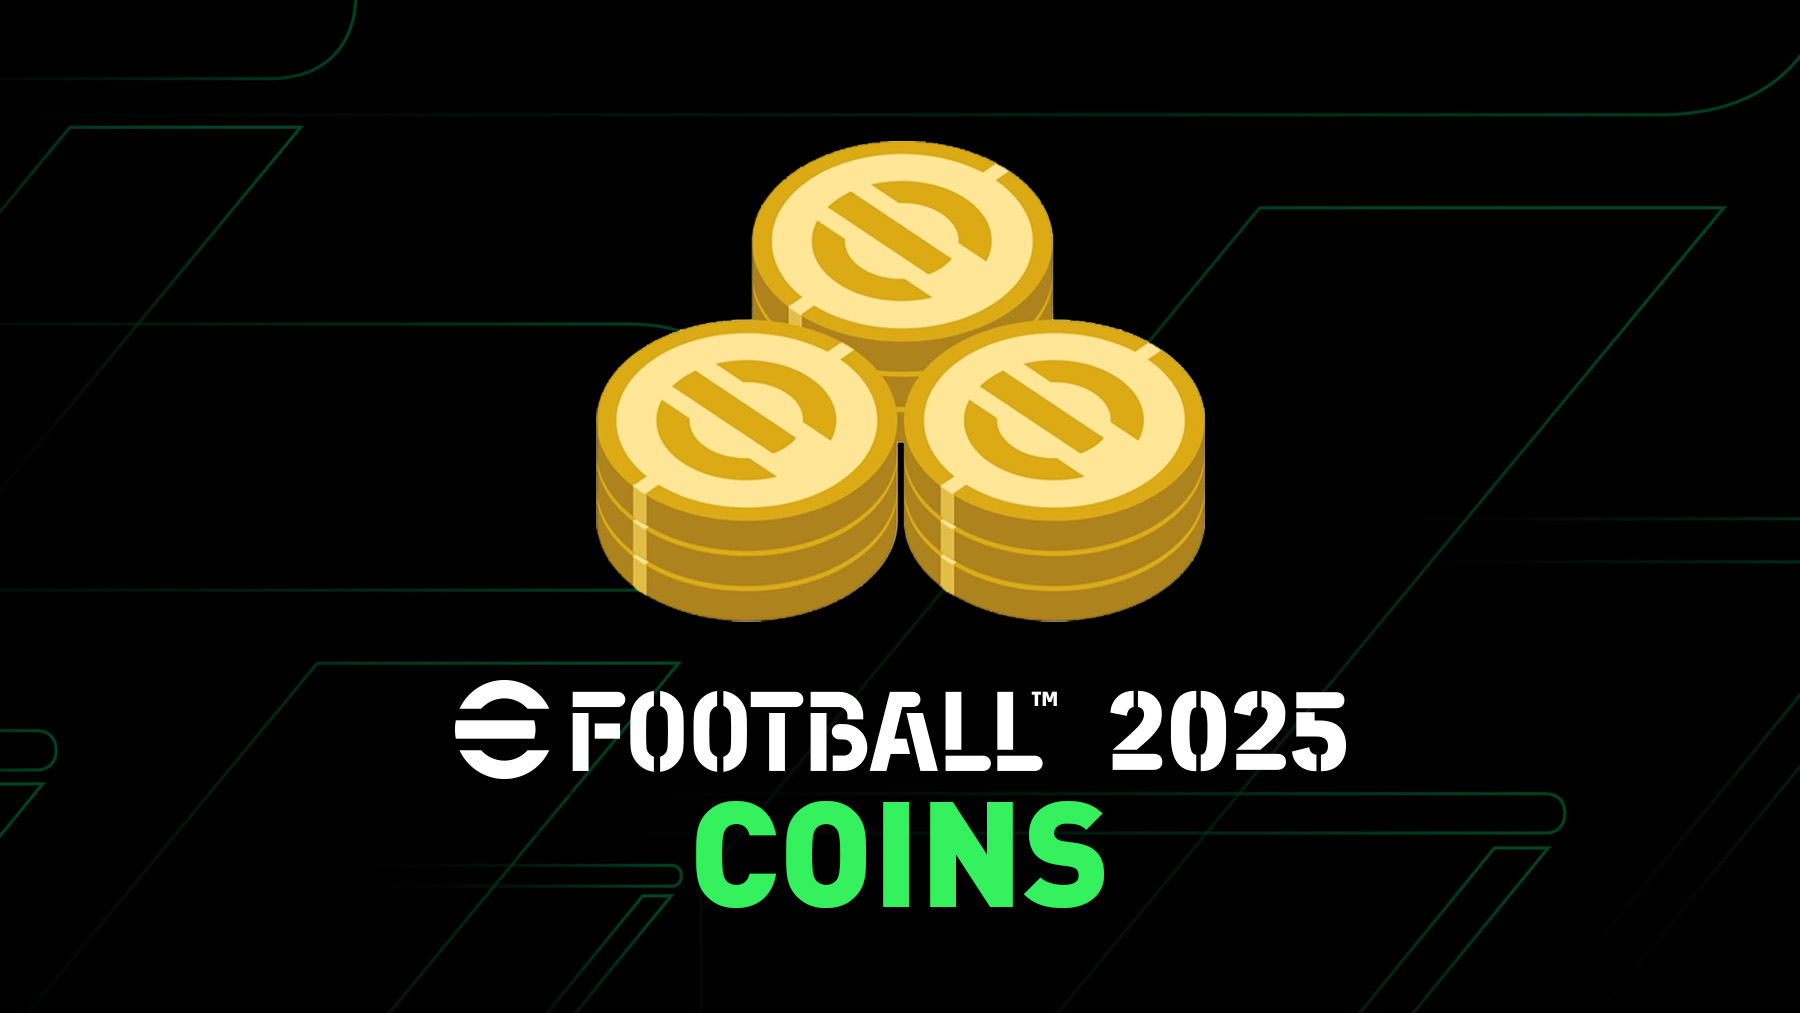 eFootball 2025 Coins